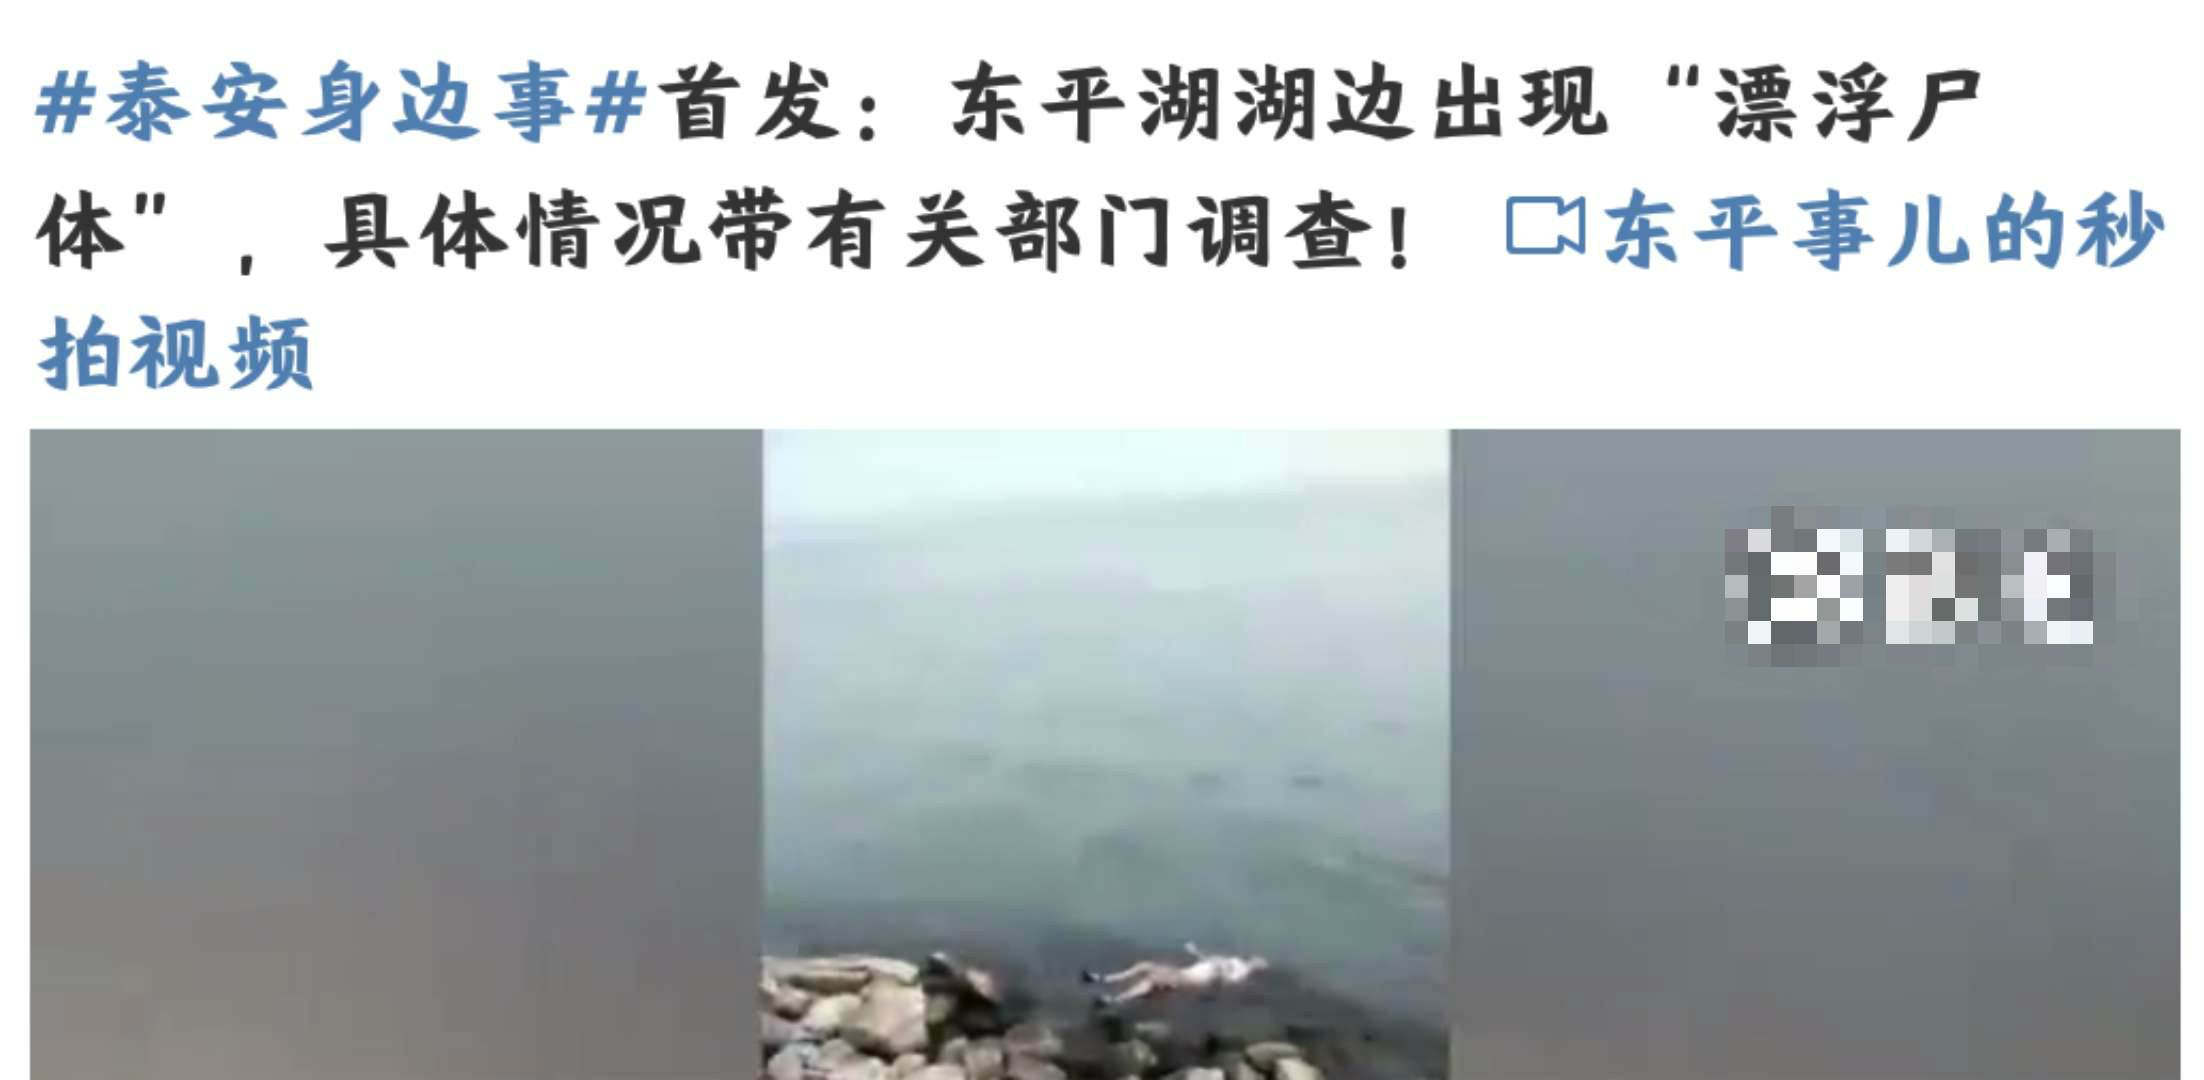 突发!15日,泰安东平湖惊现男尸,疑似外地游客溺亡